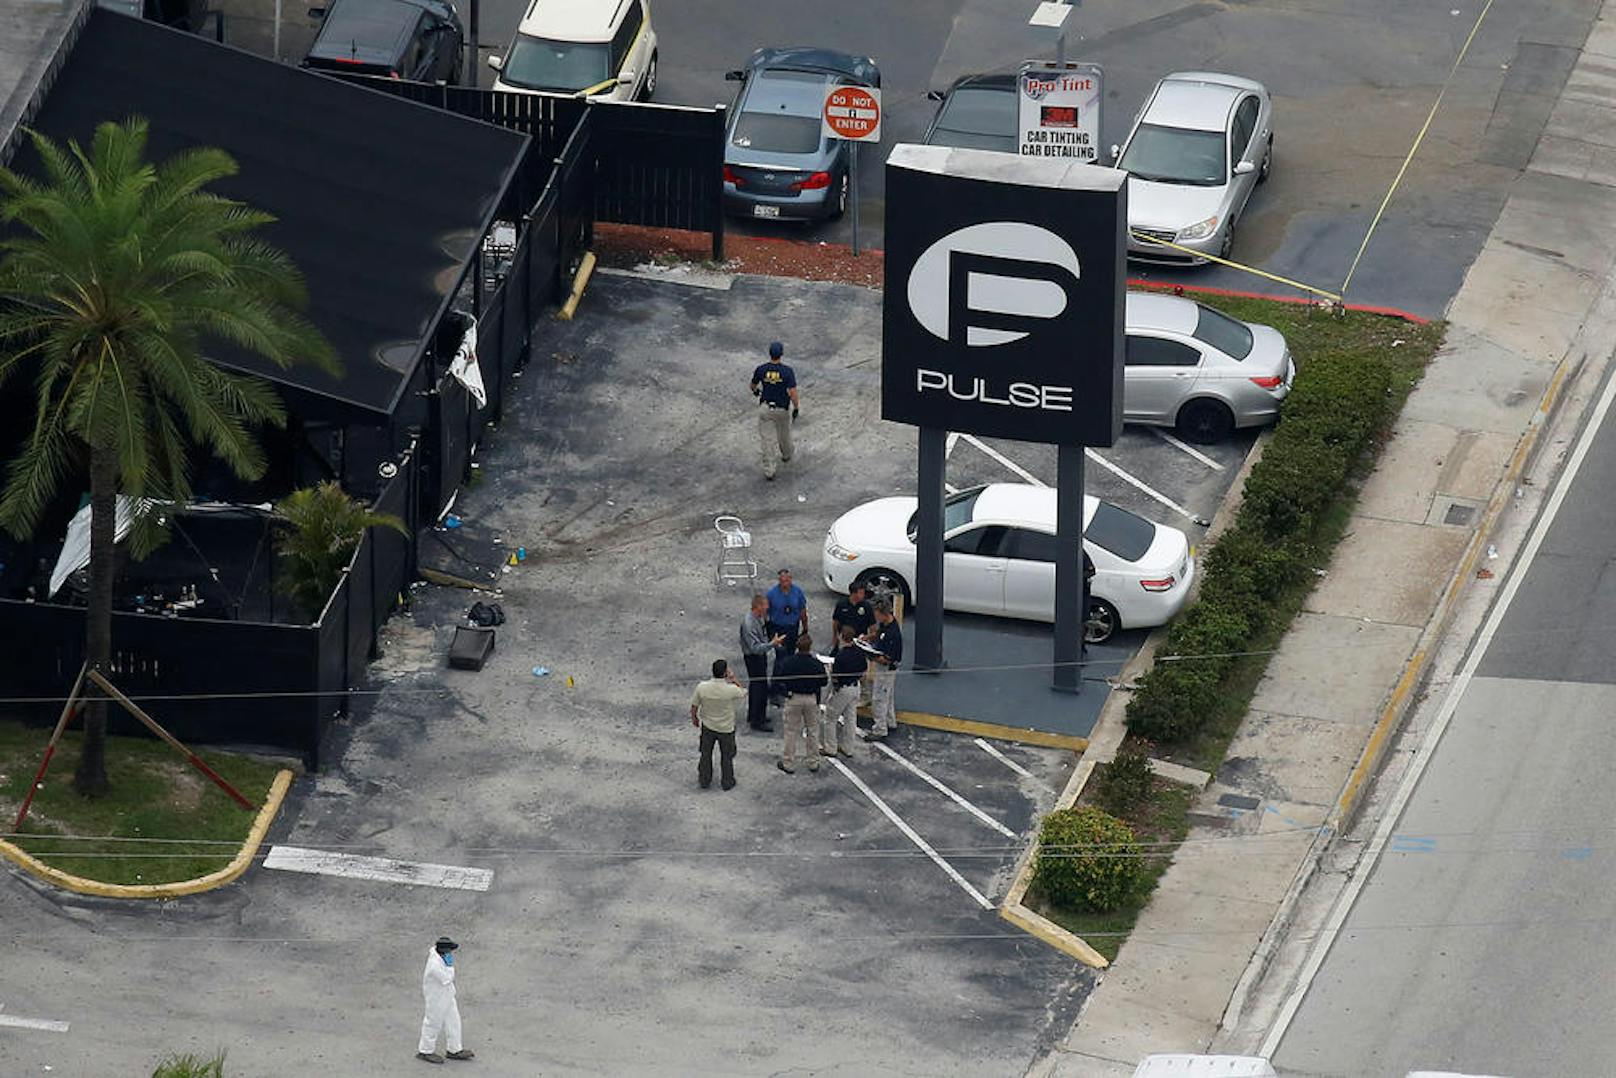 <b>Juni 2016 - 49 Tote:</b> Der 29-jährige Omar Mateen erschießt 49 Besucher eines Nachtclubs in Orlando, der bei Homosexuellen beliebt ist. Spezialeinheiten töten ihn bei der Erstürmung des Clubs. Der Attentäter, US-Bürger mit afghanischen Eltern, hatte sich zuvor zur Terrormiliz Islamischer Staat bekannt.